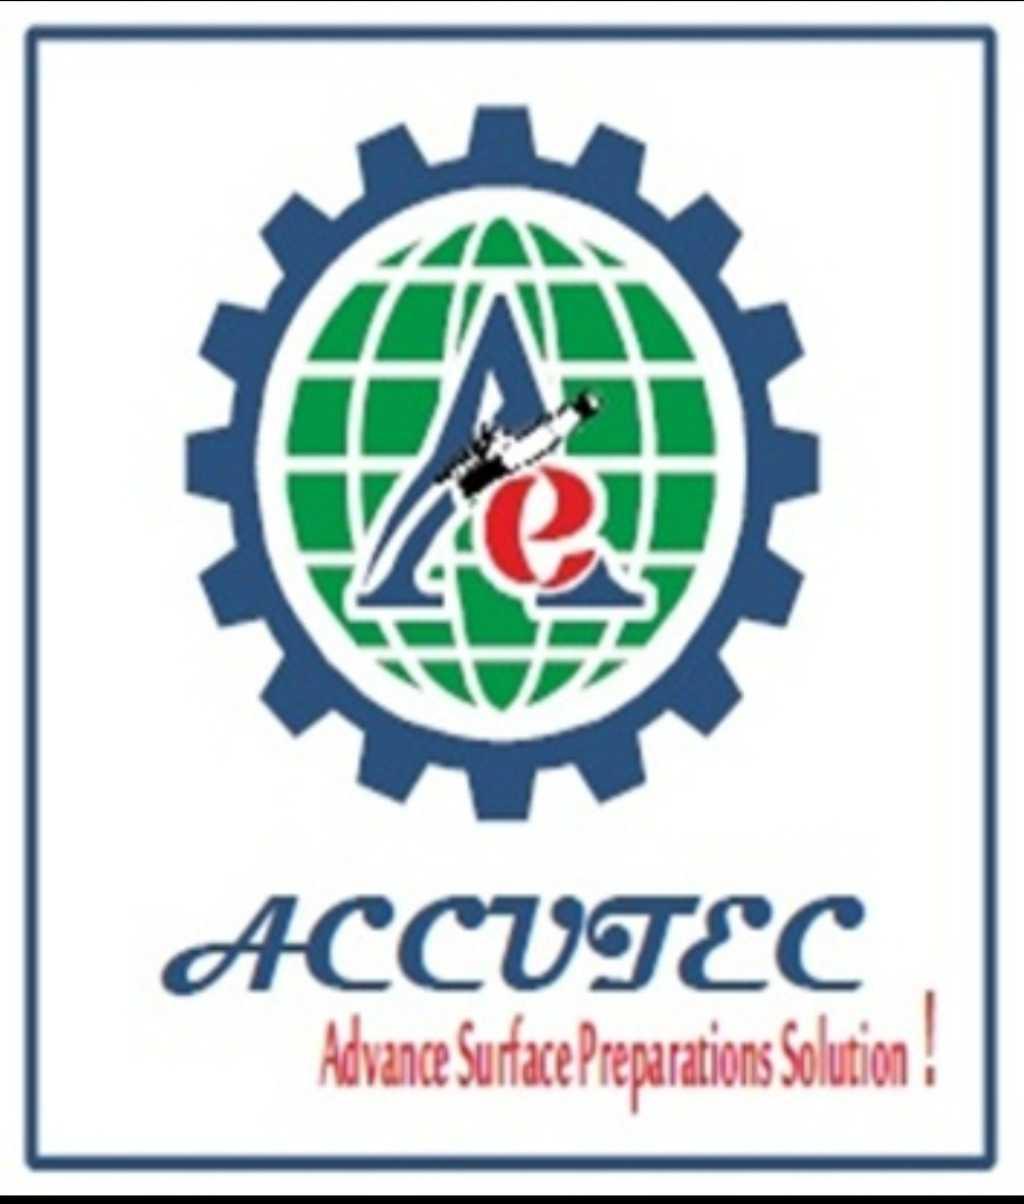 Accutec Engineering Company